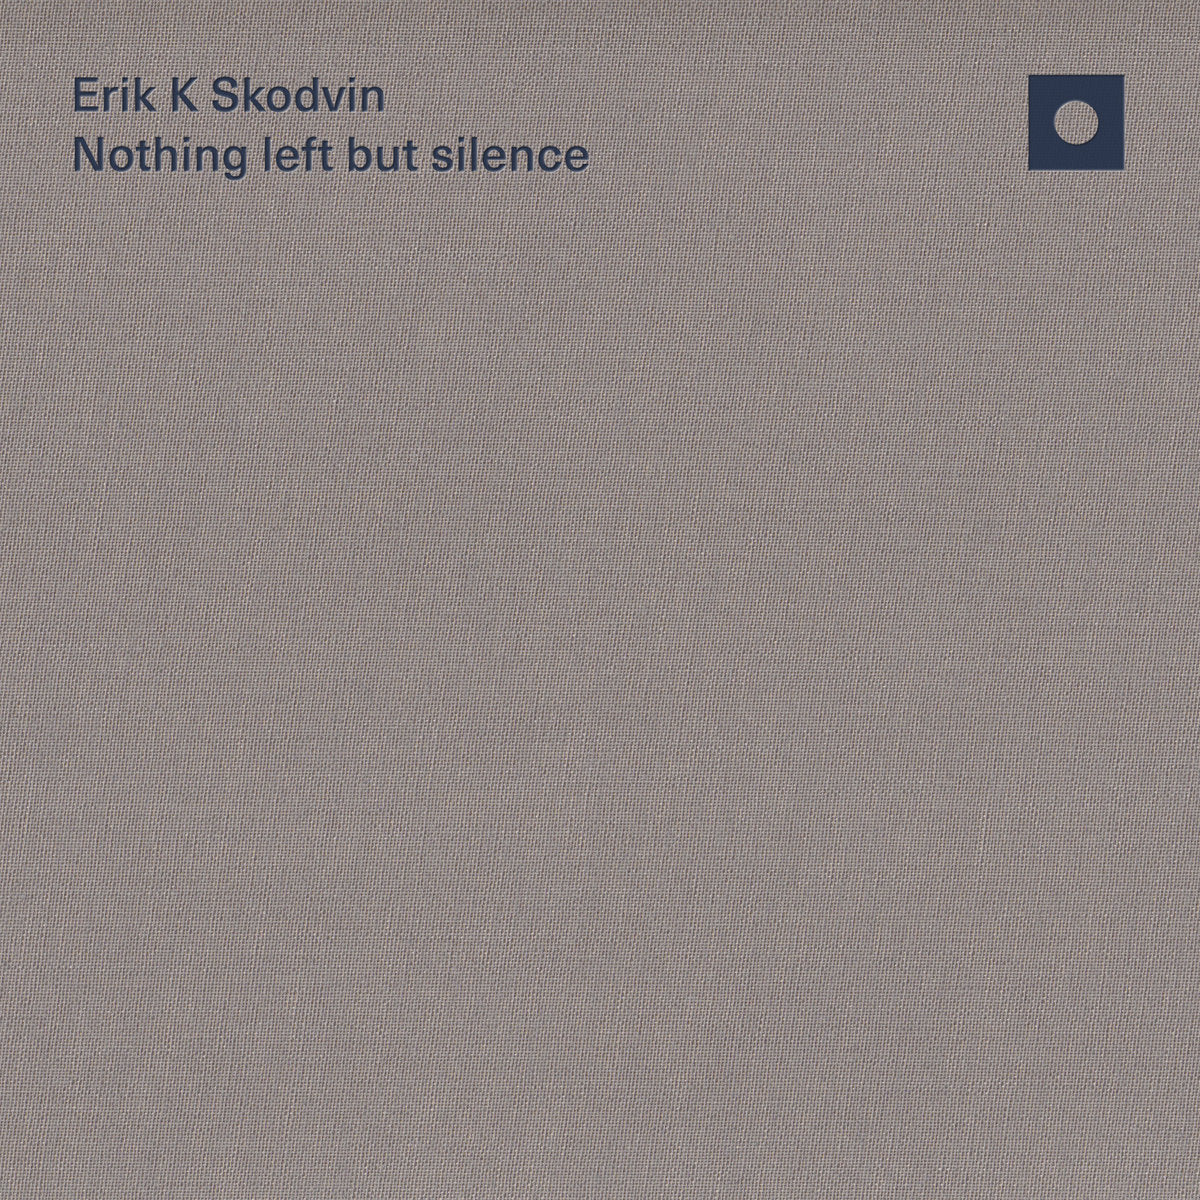 Erik K Skodvin · Nothing left but silence